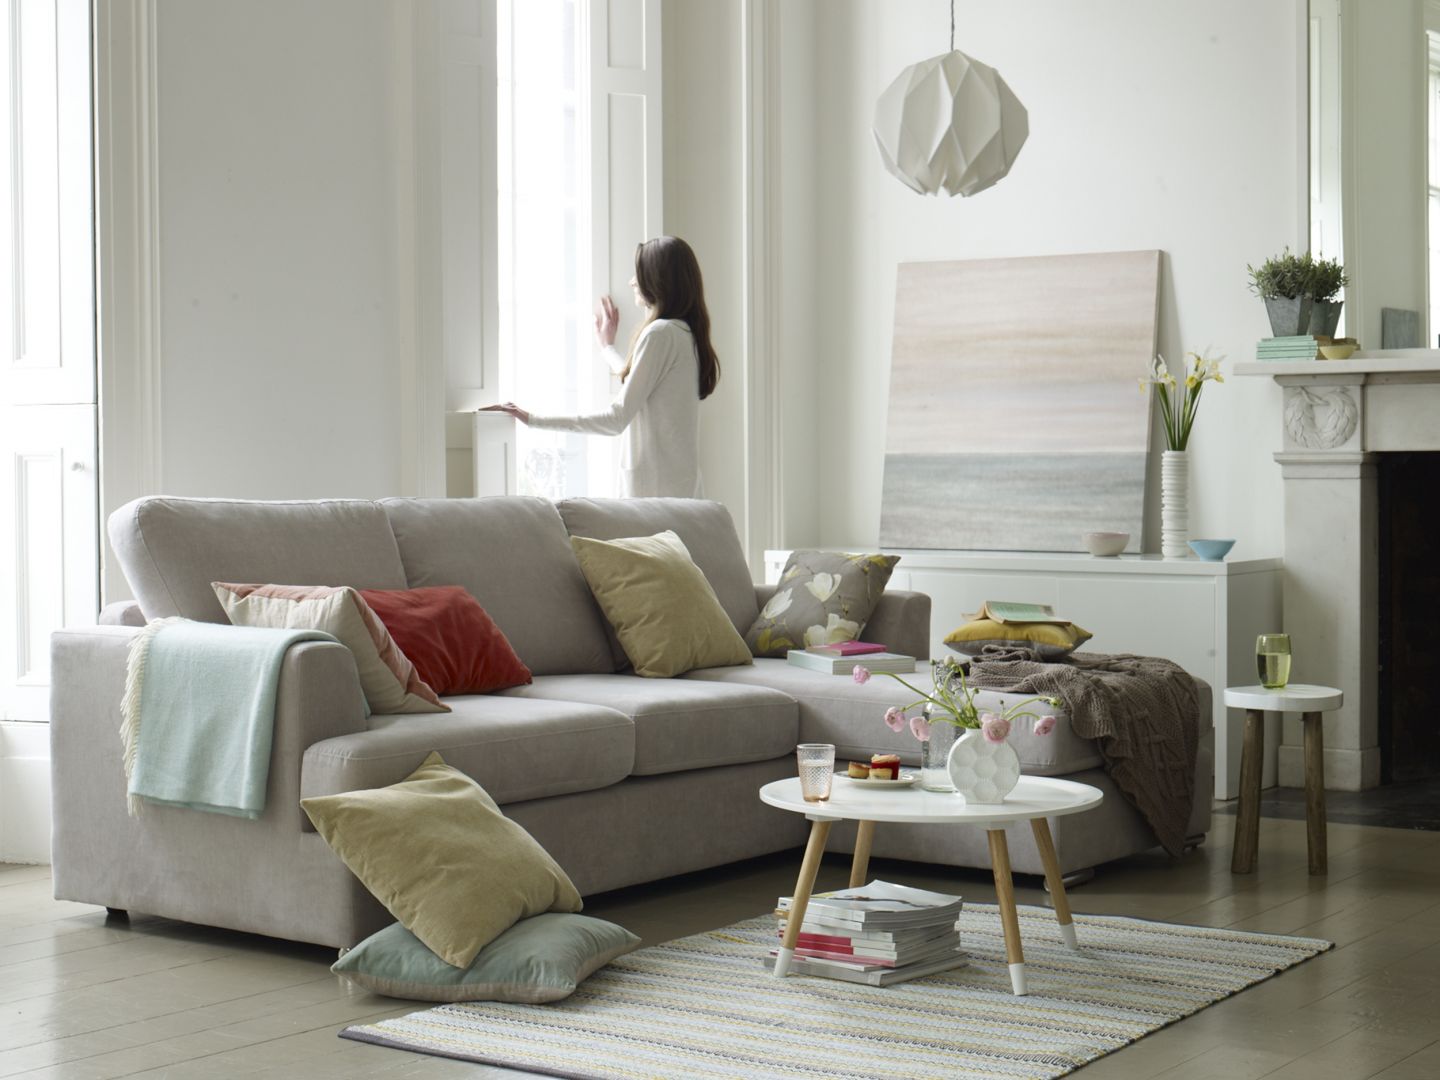 Biała sofa w białym salonie to doskonała synergia. Dzięki niej salon nabiera przestrzeni i jasności. Fot. Dfs Furniture